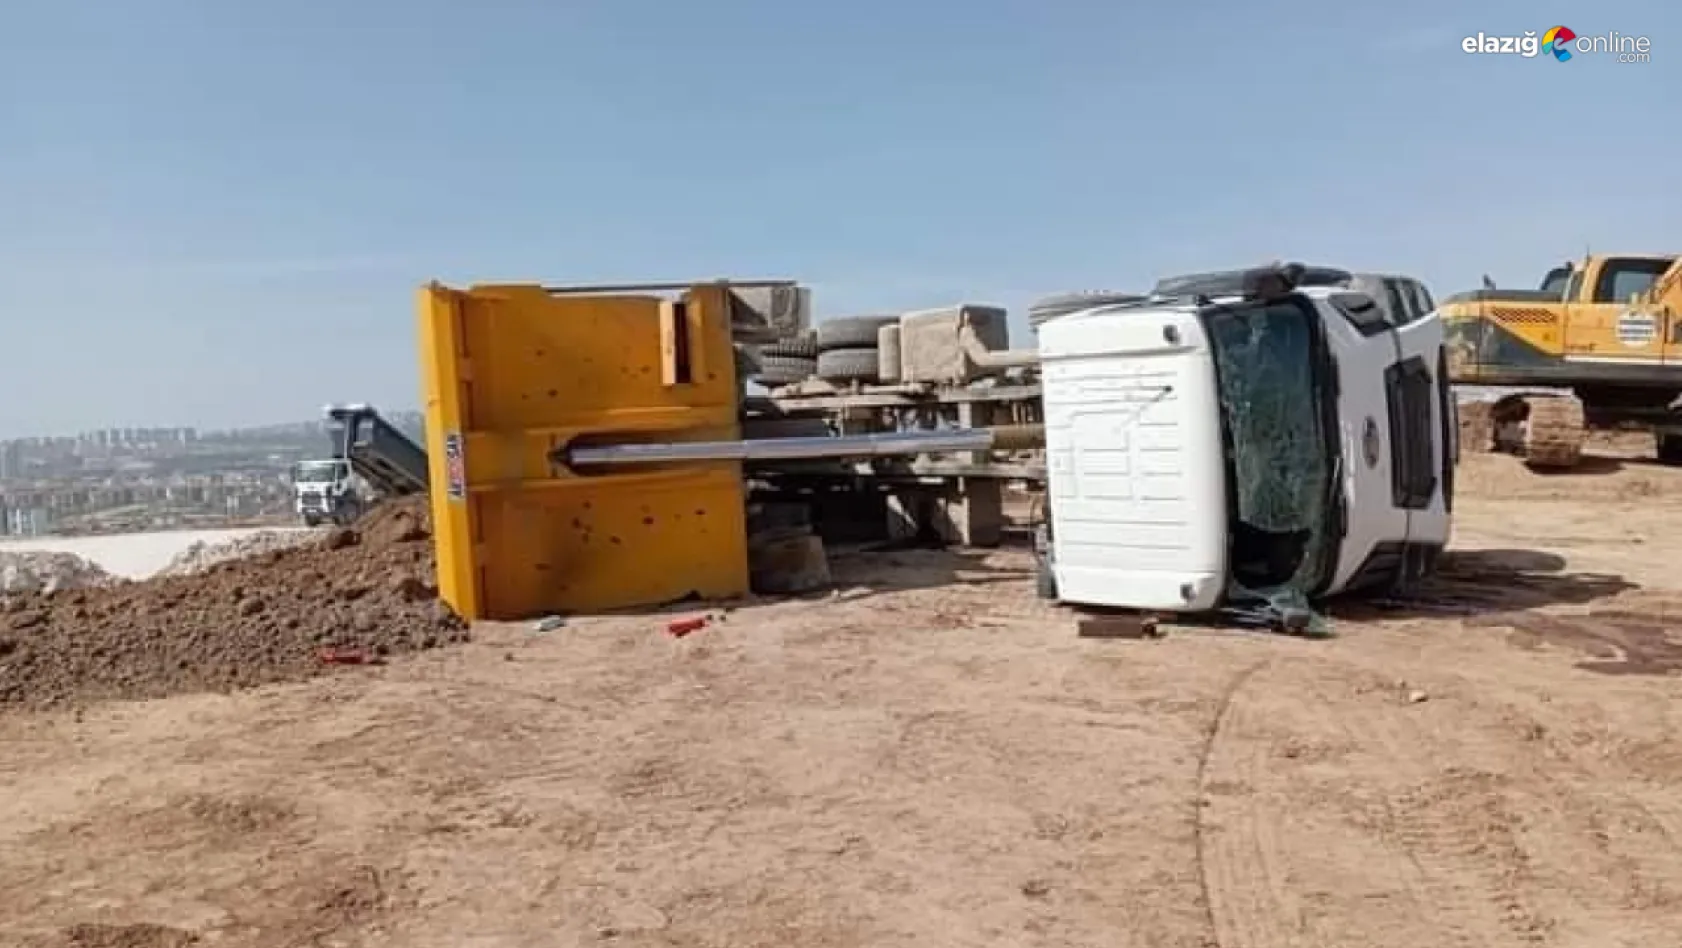 Elazığ'da toprak yüklü kamyon devrildi!